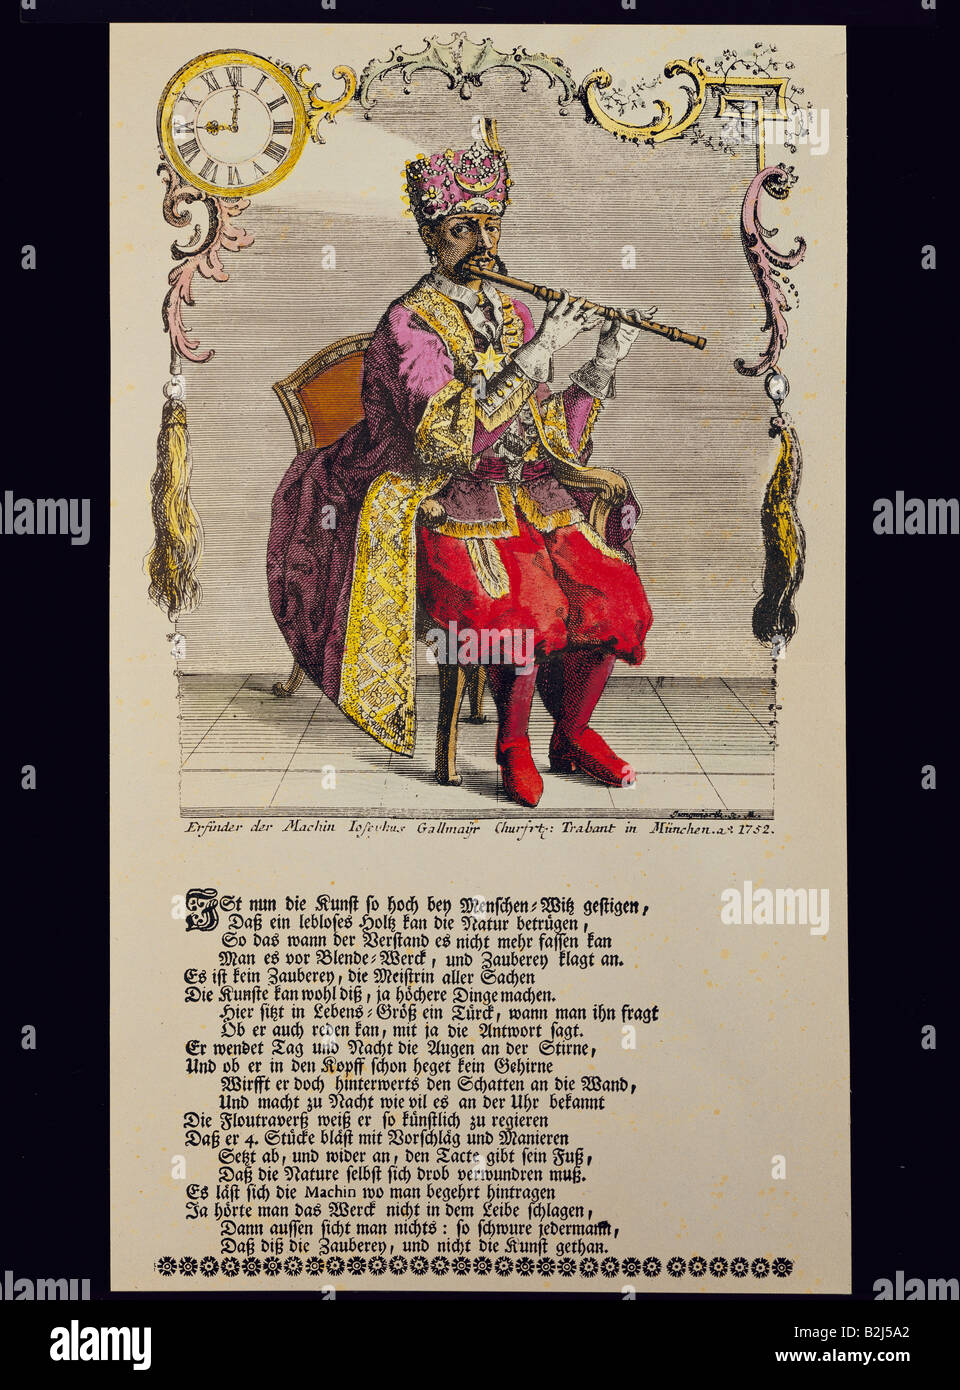 La musique, encore de l'automatisation, technicss, Turk jouant de la flûte, construit par Joseph Gallmayr (1717 - 1790), gravure sur cuivre de couleur, Munich, 1752, copyright de l'artiste n'a pas à être effacée Banque D'Images